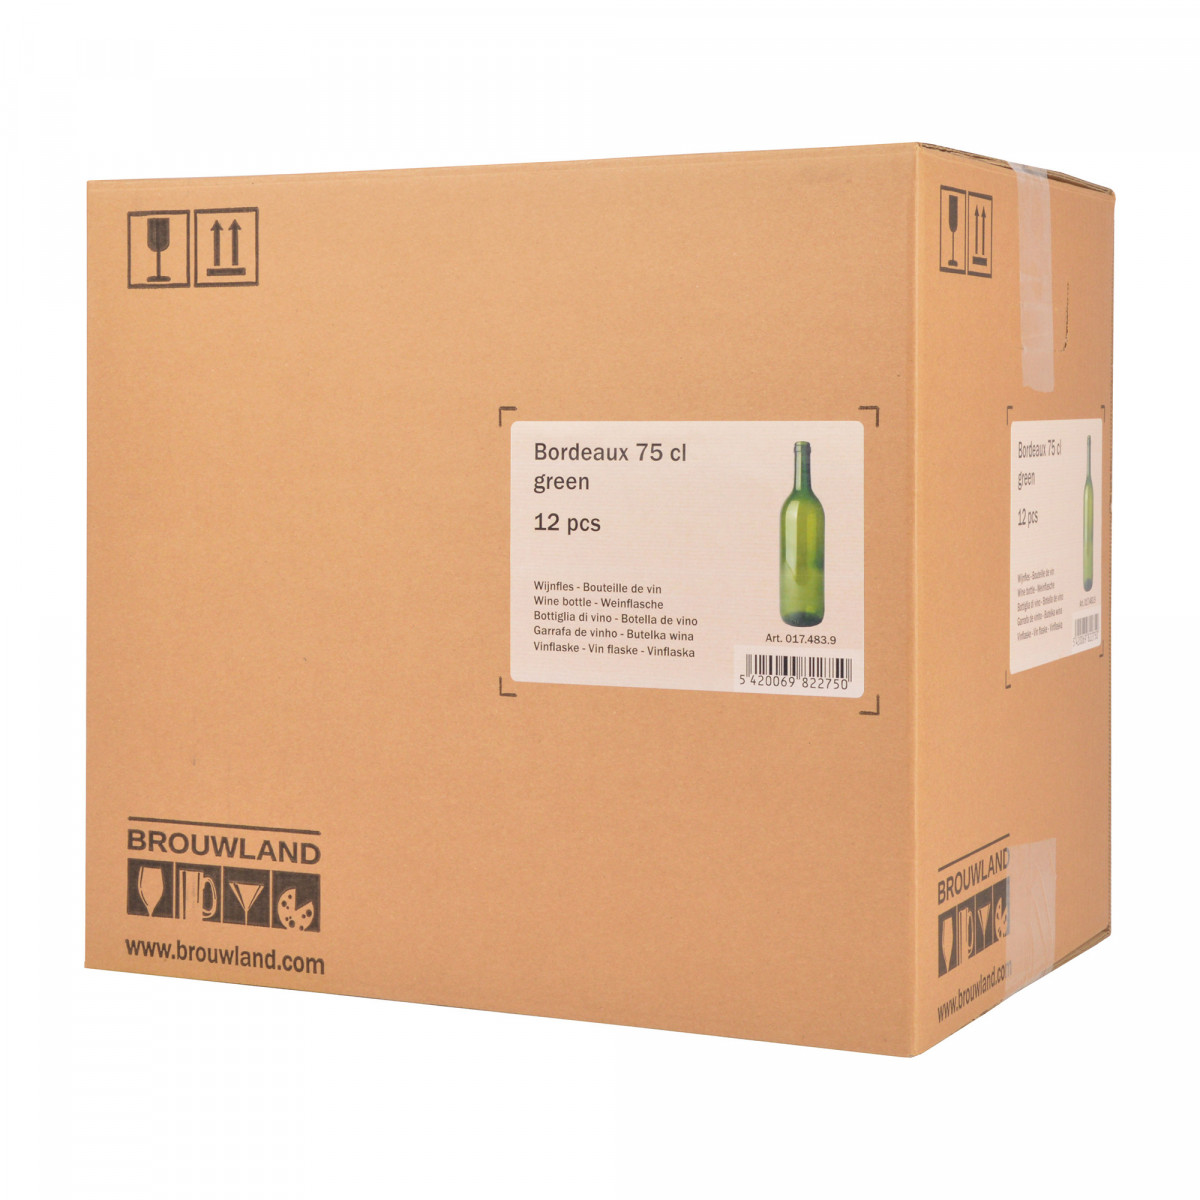 Wine bottle Bordeaux 75 cl, green, box 12 pcs